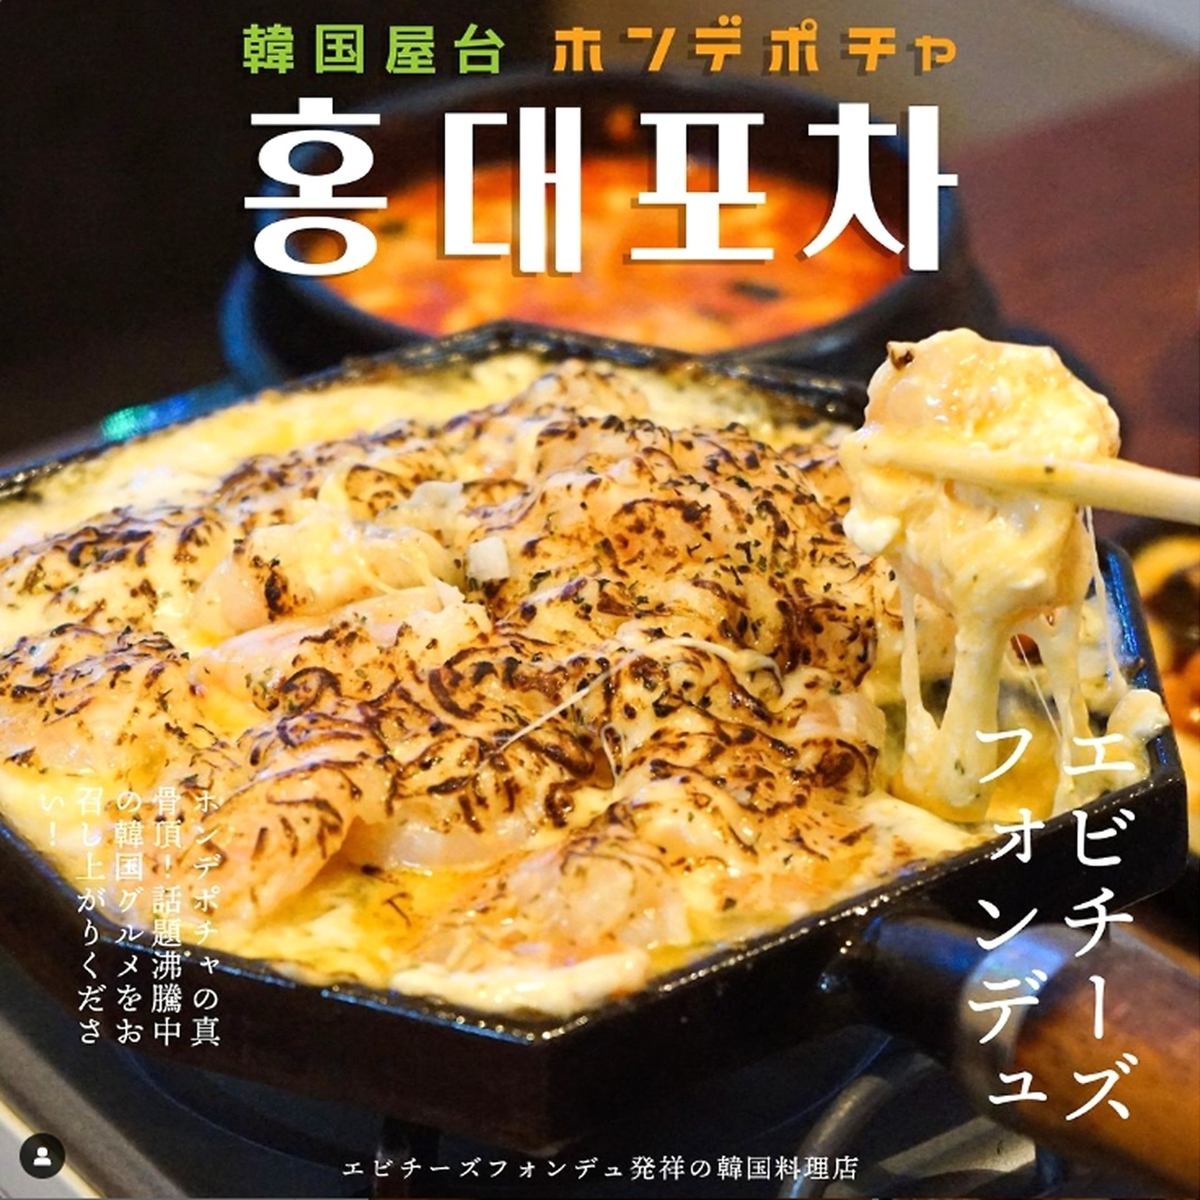 ☆ Enjoy the taste of Shin-Okubo's popular shrimp cheese fondue shop in Shibuya ♪